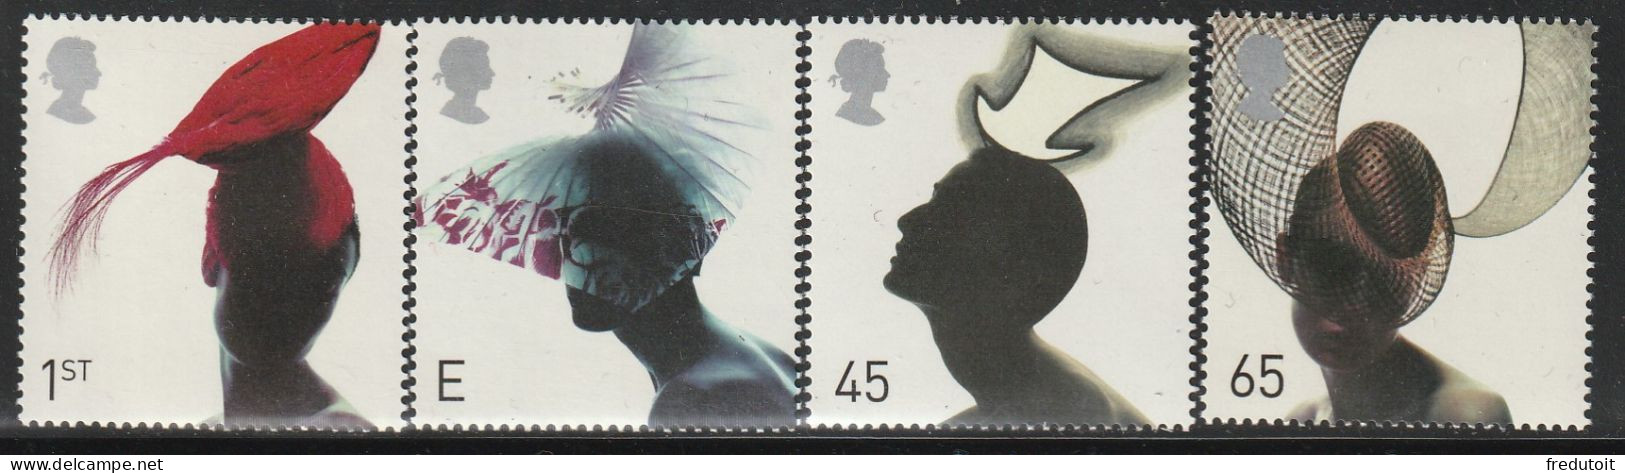 GRANDE BRETAGNE - N°2258/61 ** (2001) Mode : Chapeaux - Unused Stamps